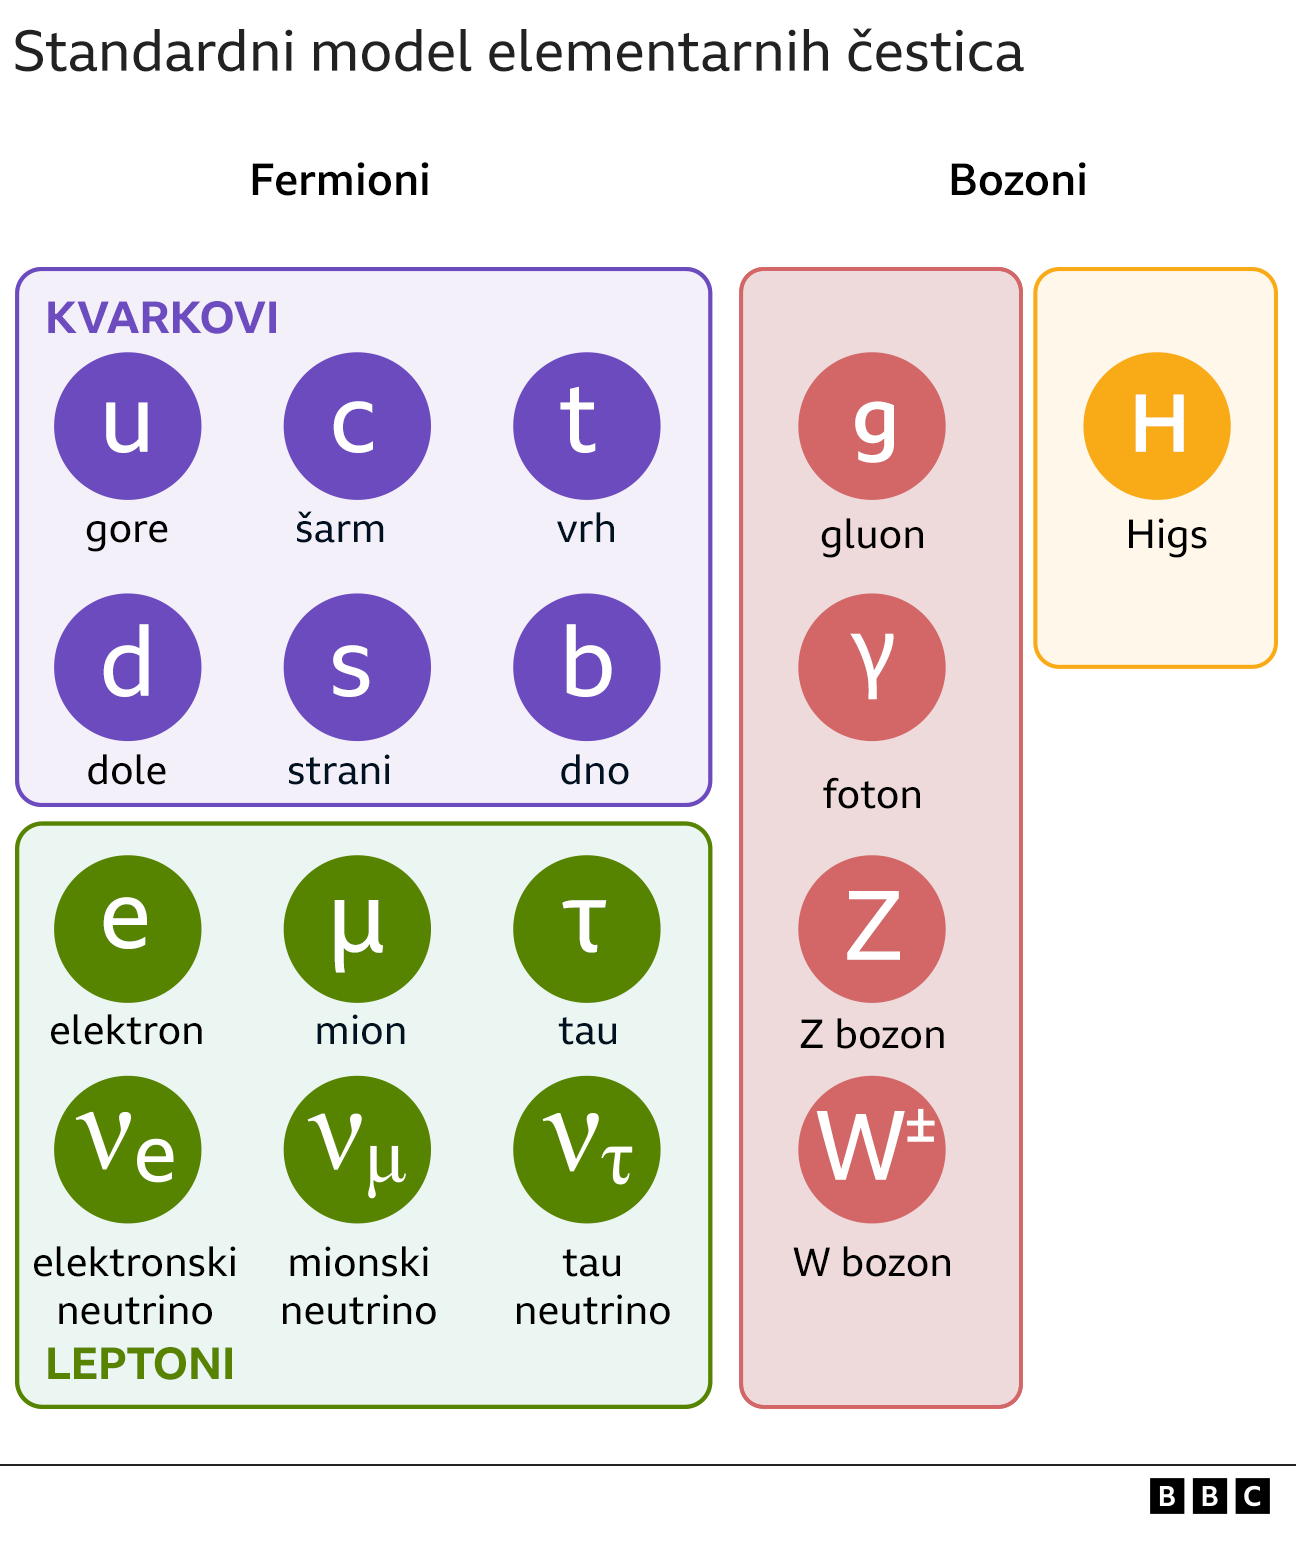 Higsov bozon, Standardni model